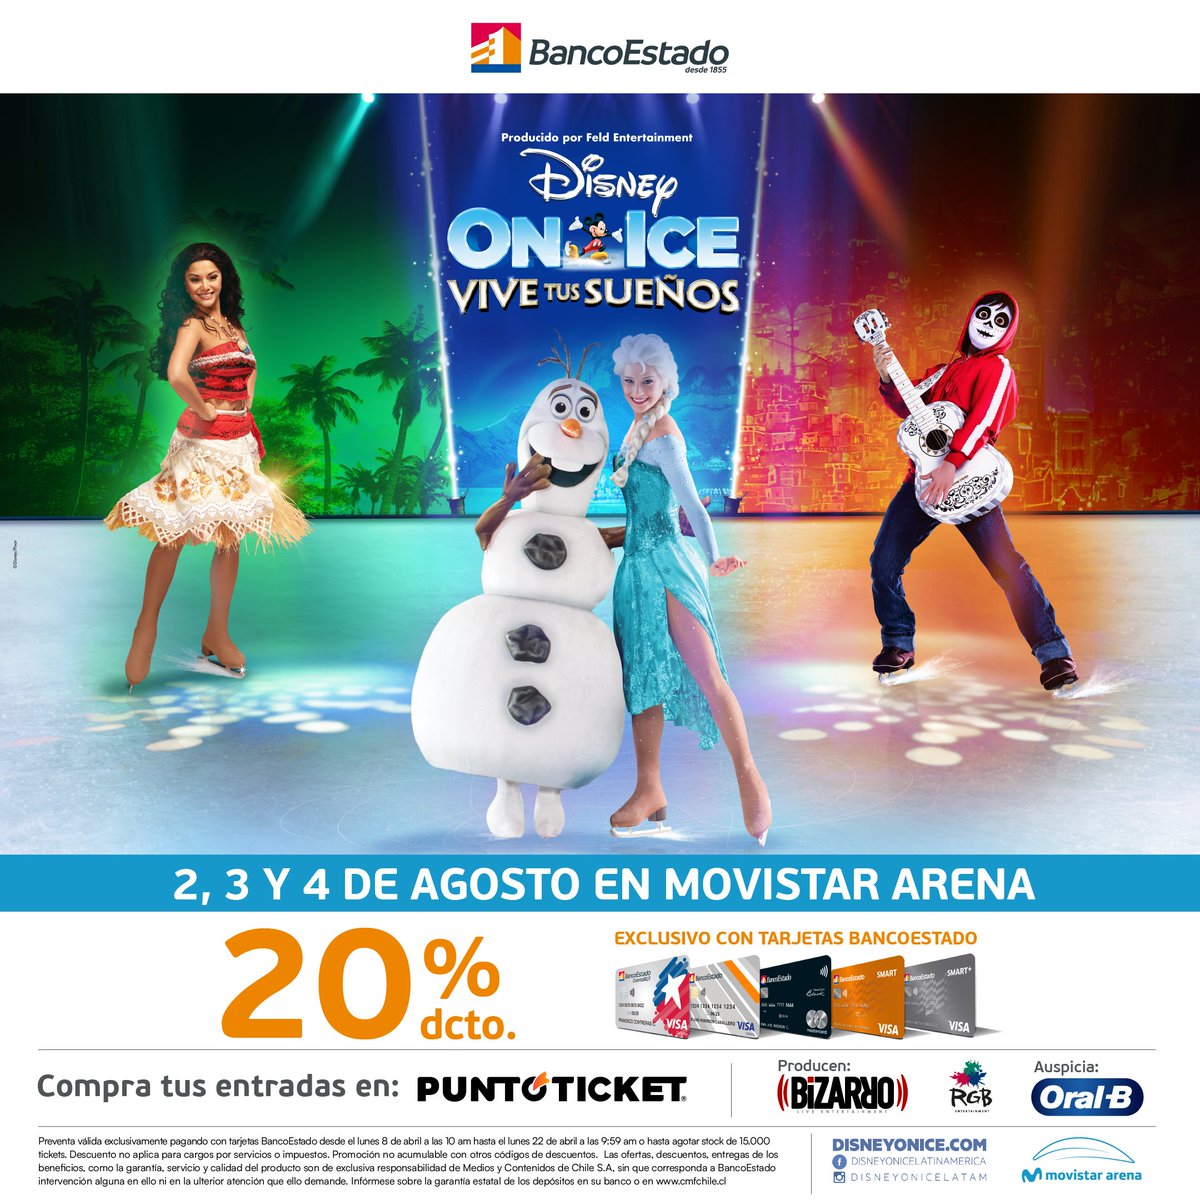 ¡Comenzó la venta de entradas para Disney On Ice! ❄️⛸️ Regresa a Chile el espectacular show sobre hielo de Disney al Movistar Arena para toda la familia. Mickey, Minnie y los personajes favoritos de ayer y hoy se presentarán este 2, 3 y 4 de agosto en el recinto del Parque…